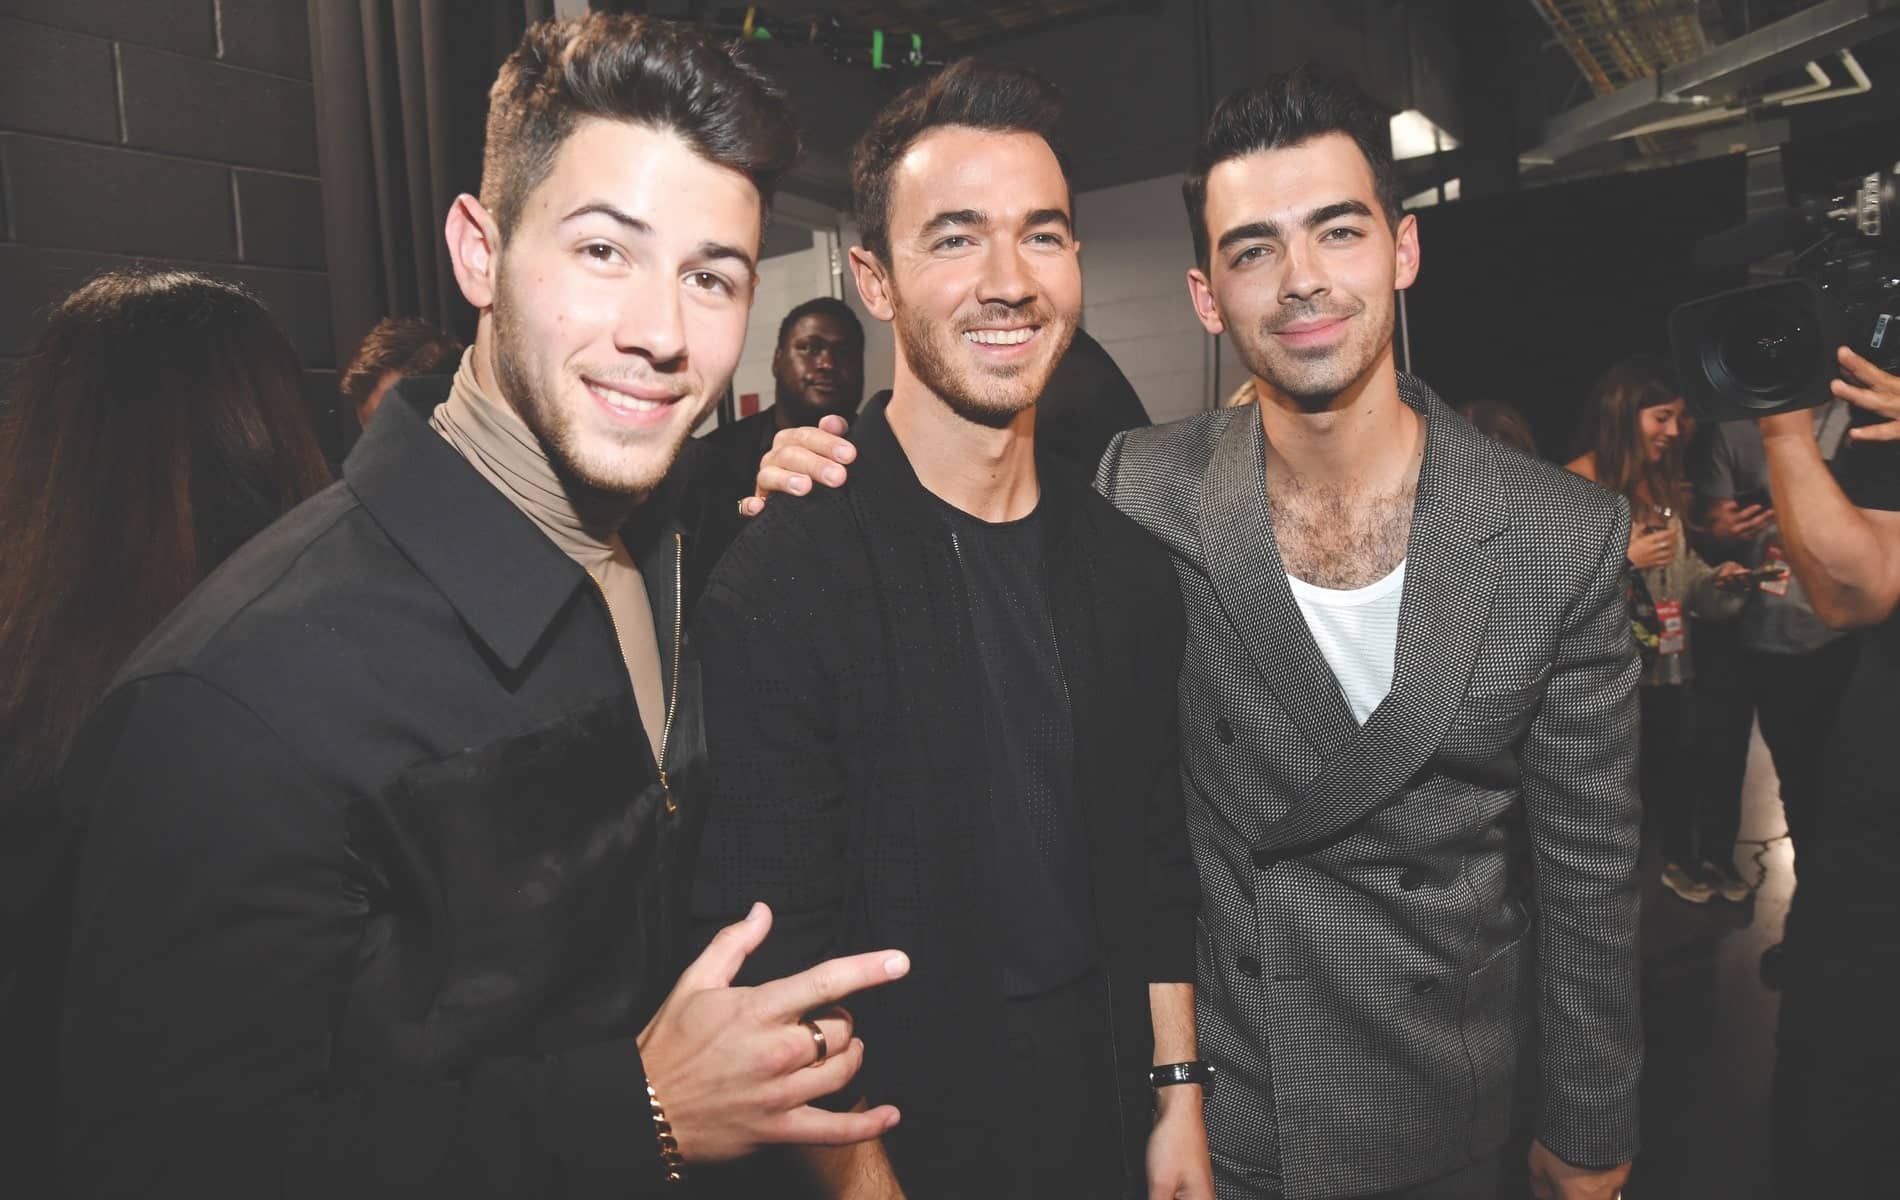 2019 MTV Video Music Awards, Jonas Brothers, Nick Jonas, Kevin Jonas, Joe Jonas